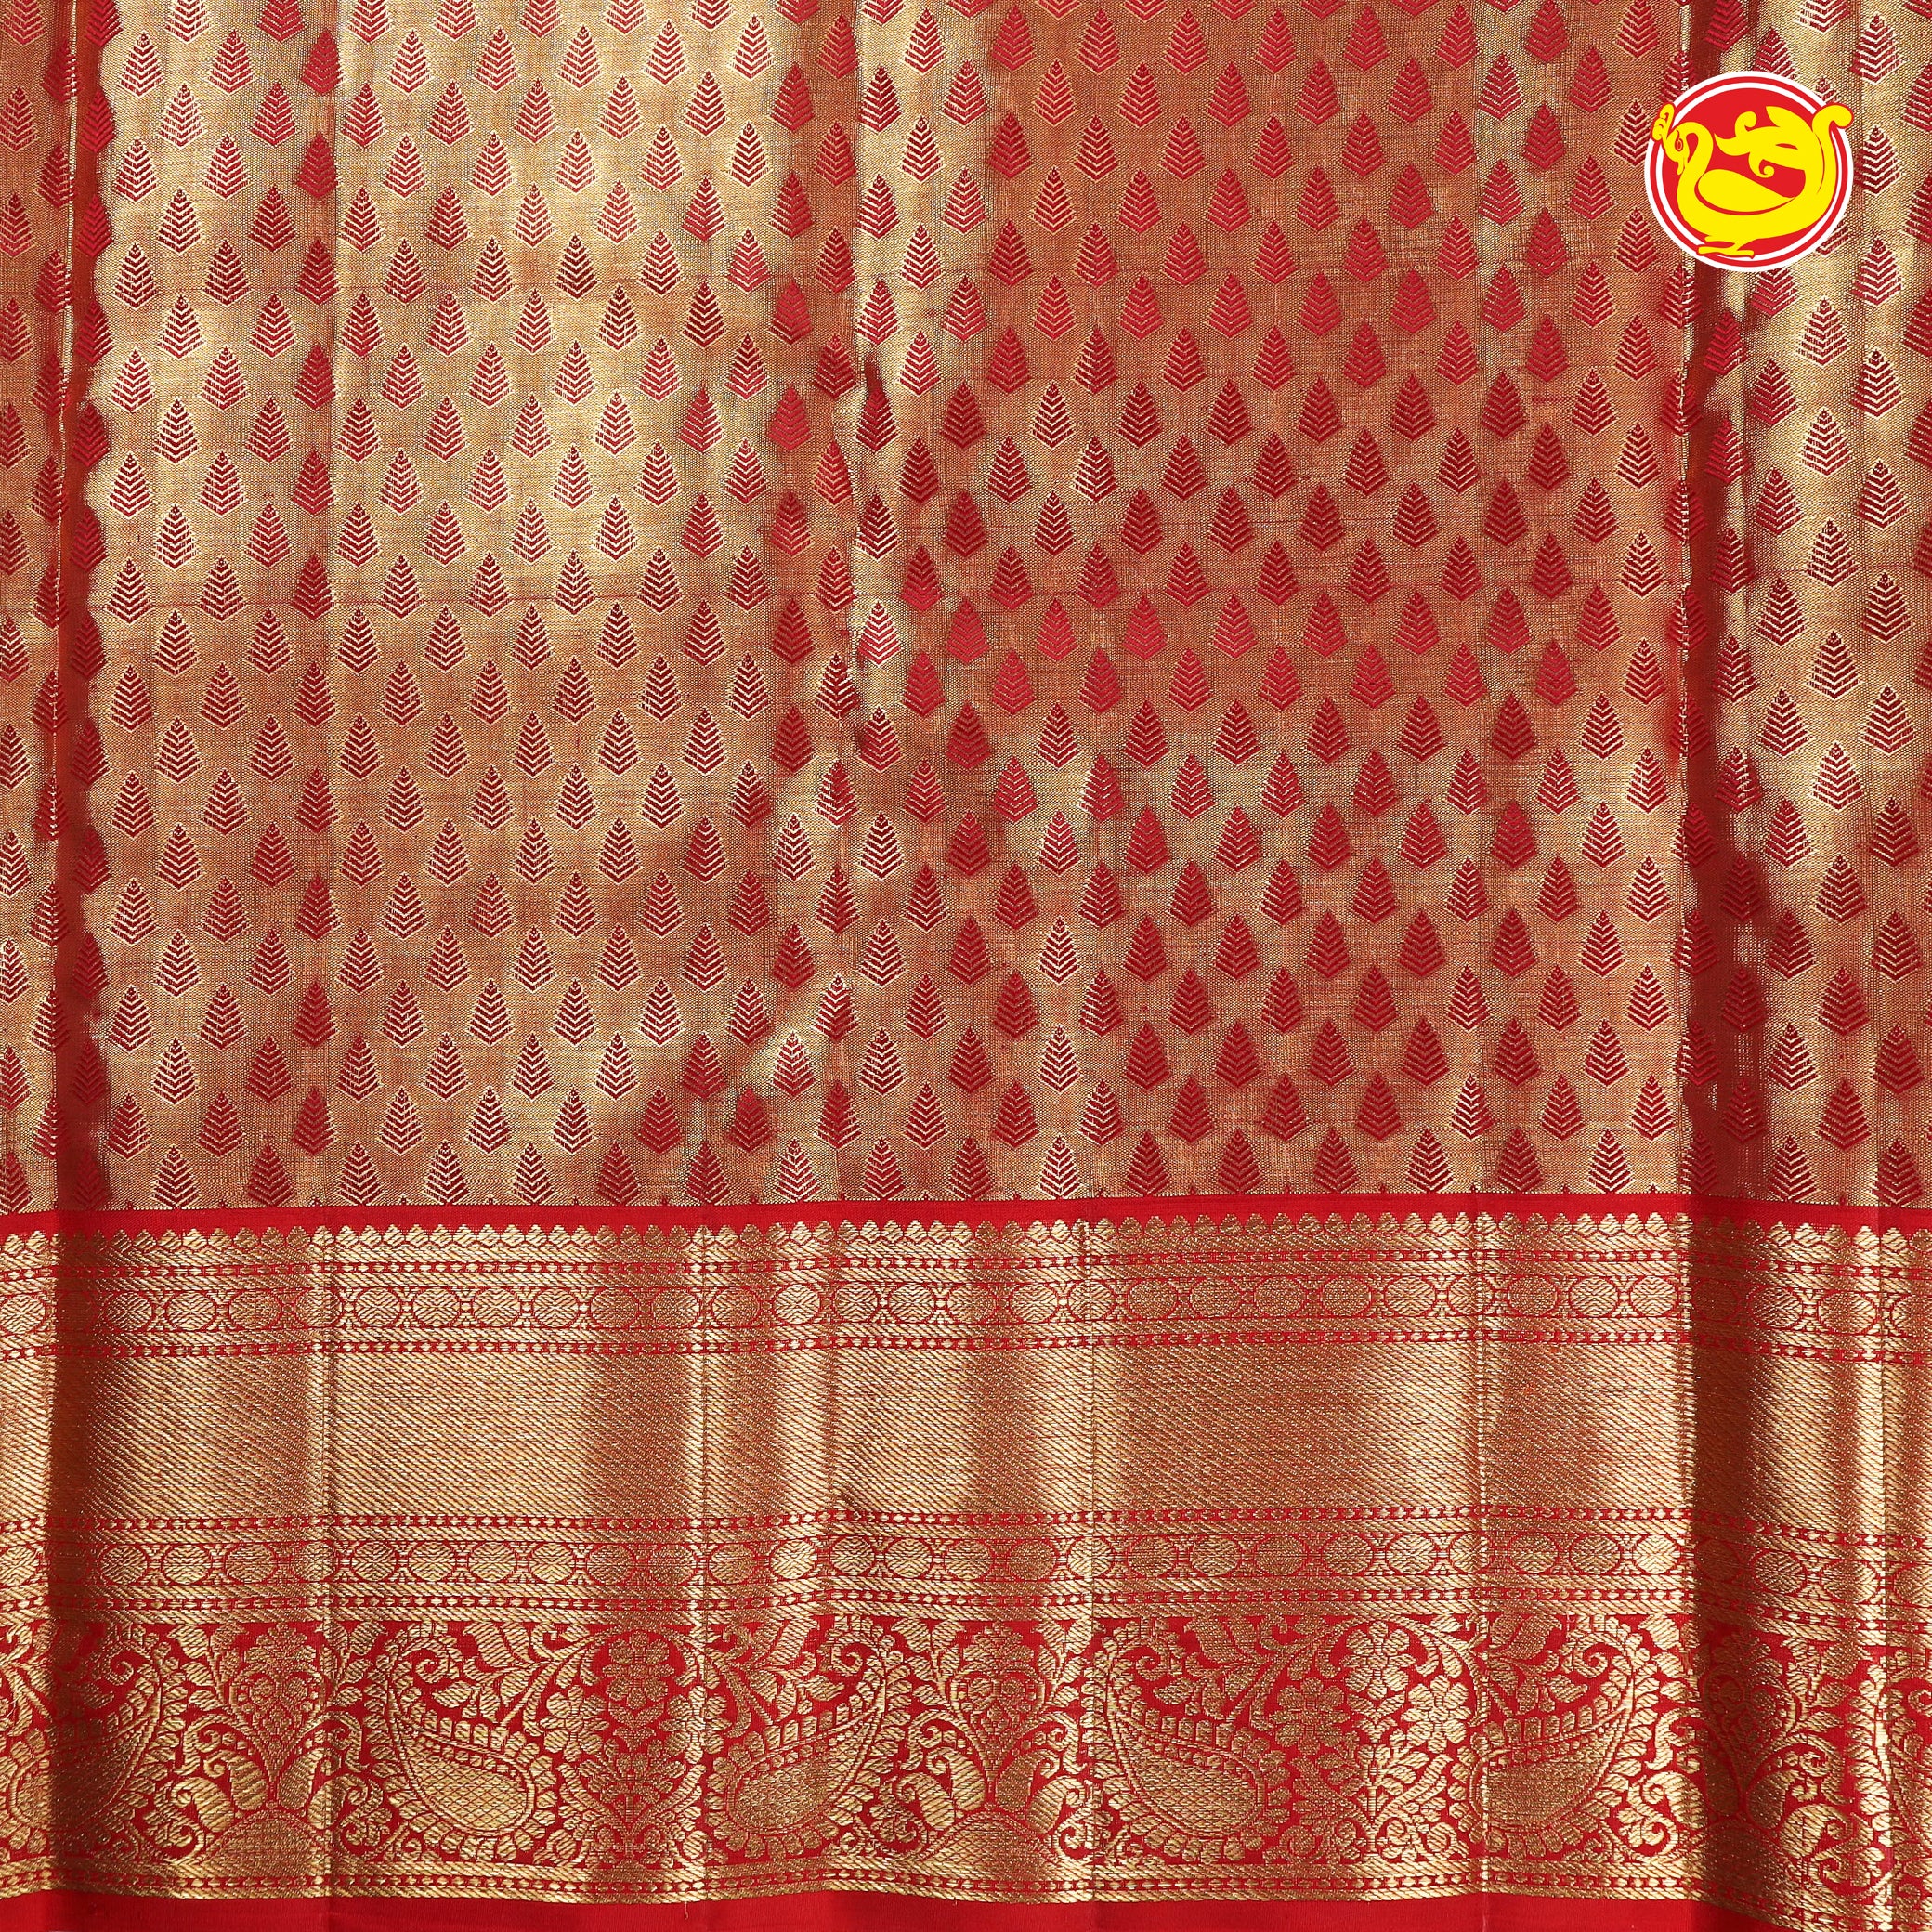 Golden Tissue with Red Wedding silk sarees